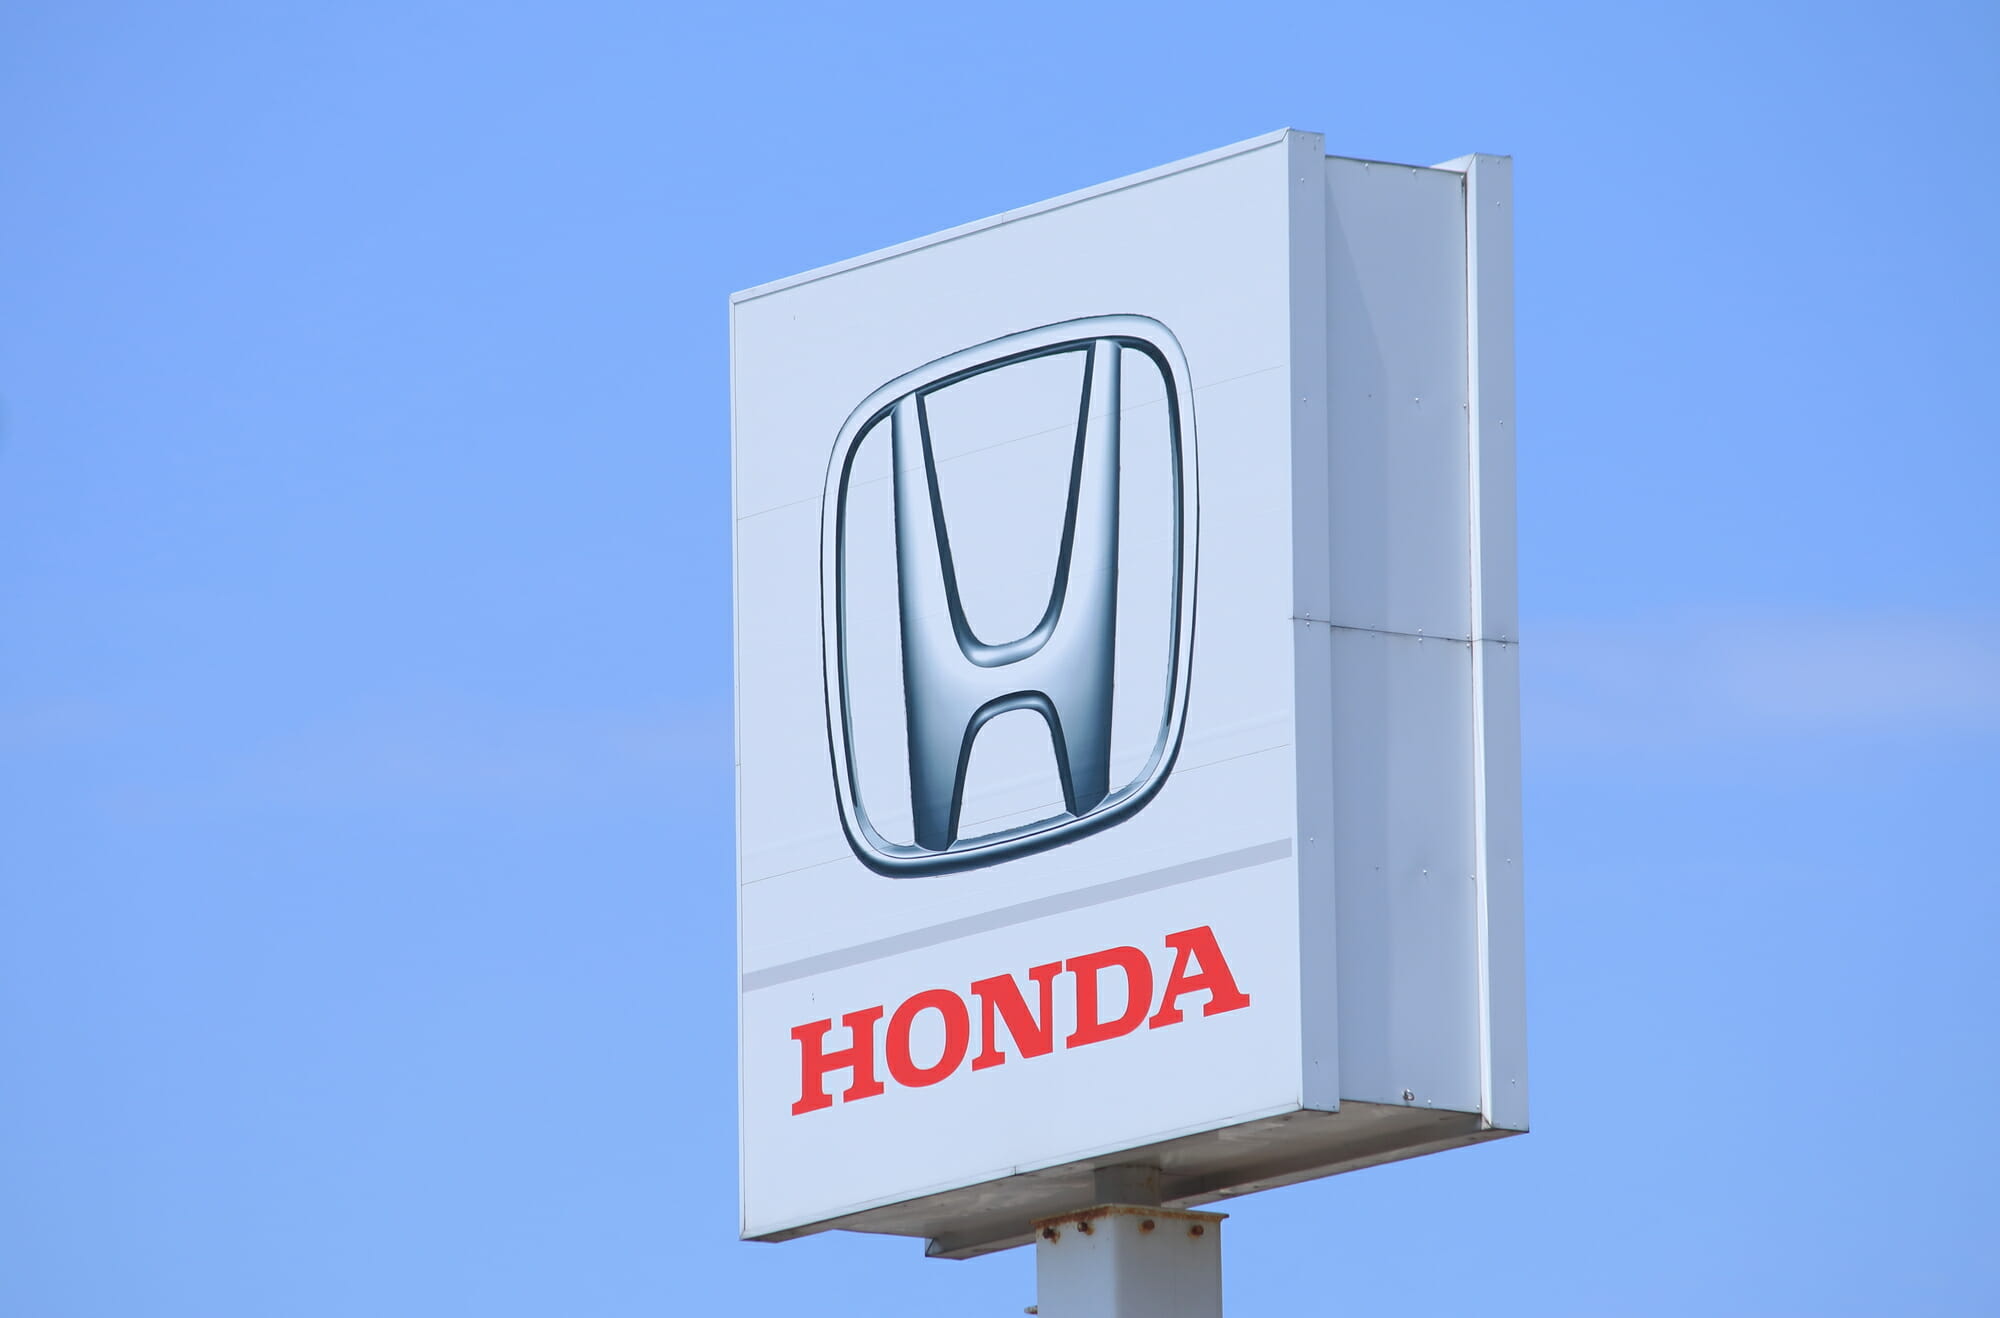 Honda Safety Recalls